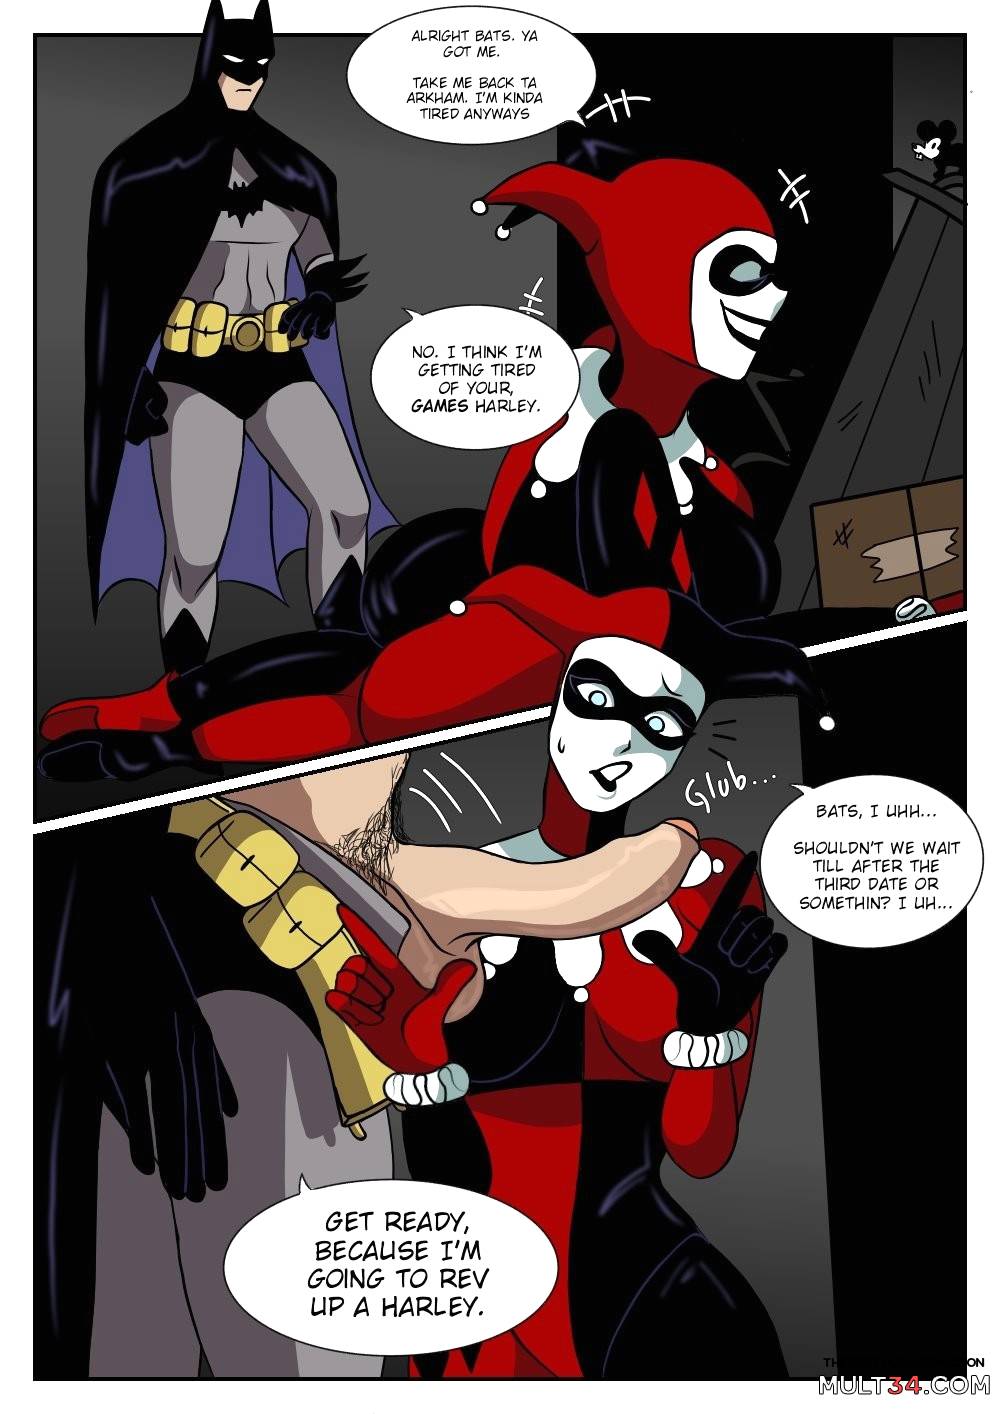 Batman Porn Cartoons - Batman and Harley Quinn porn comic - the best cartoon porn comics, Rule 34  | MULT34